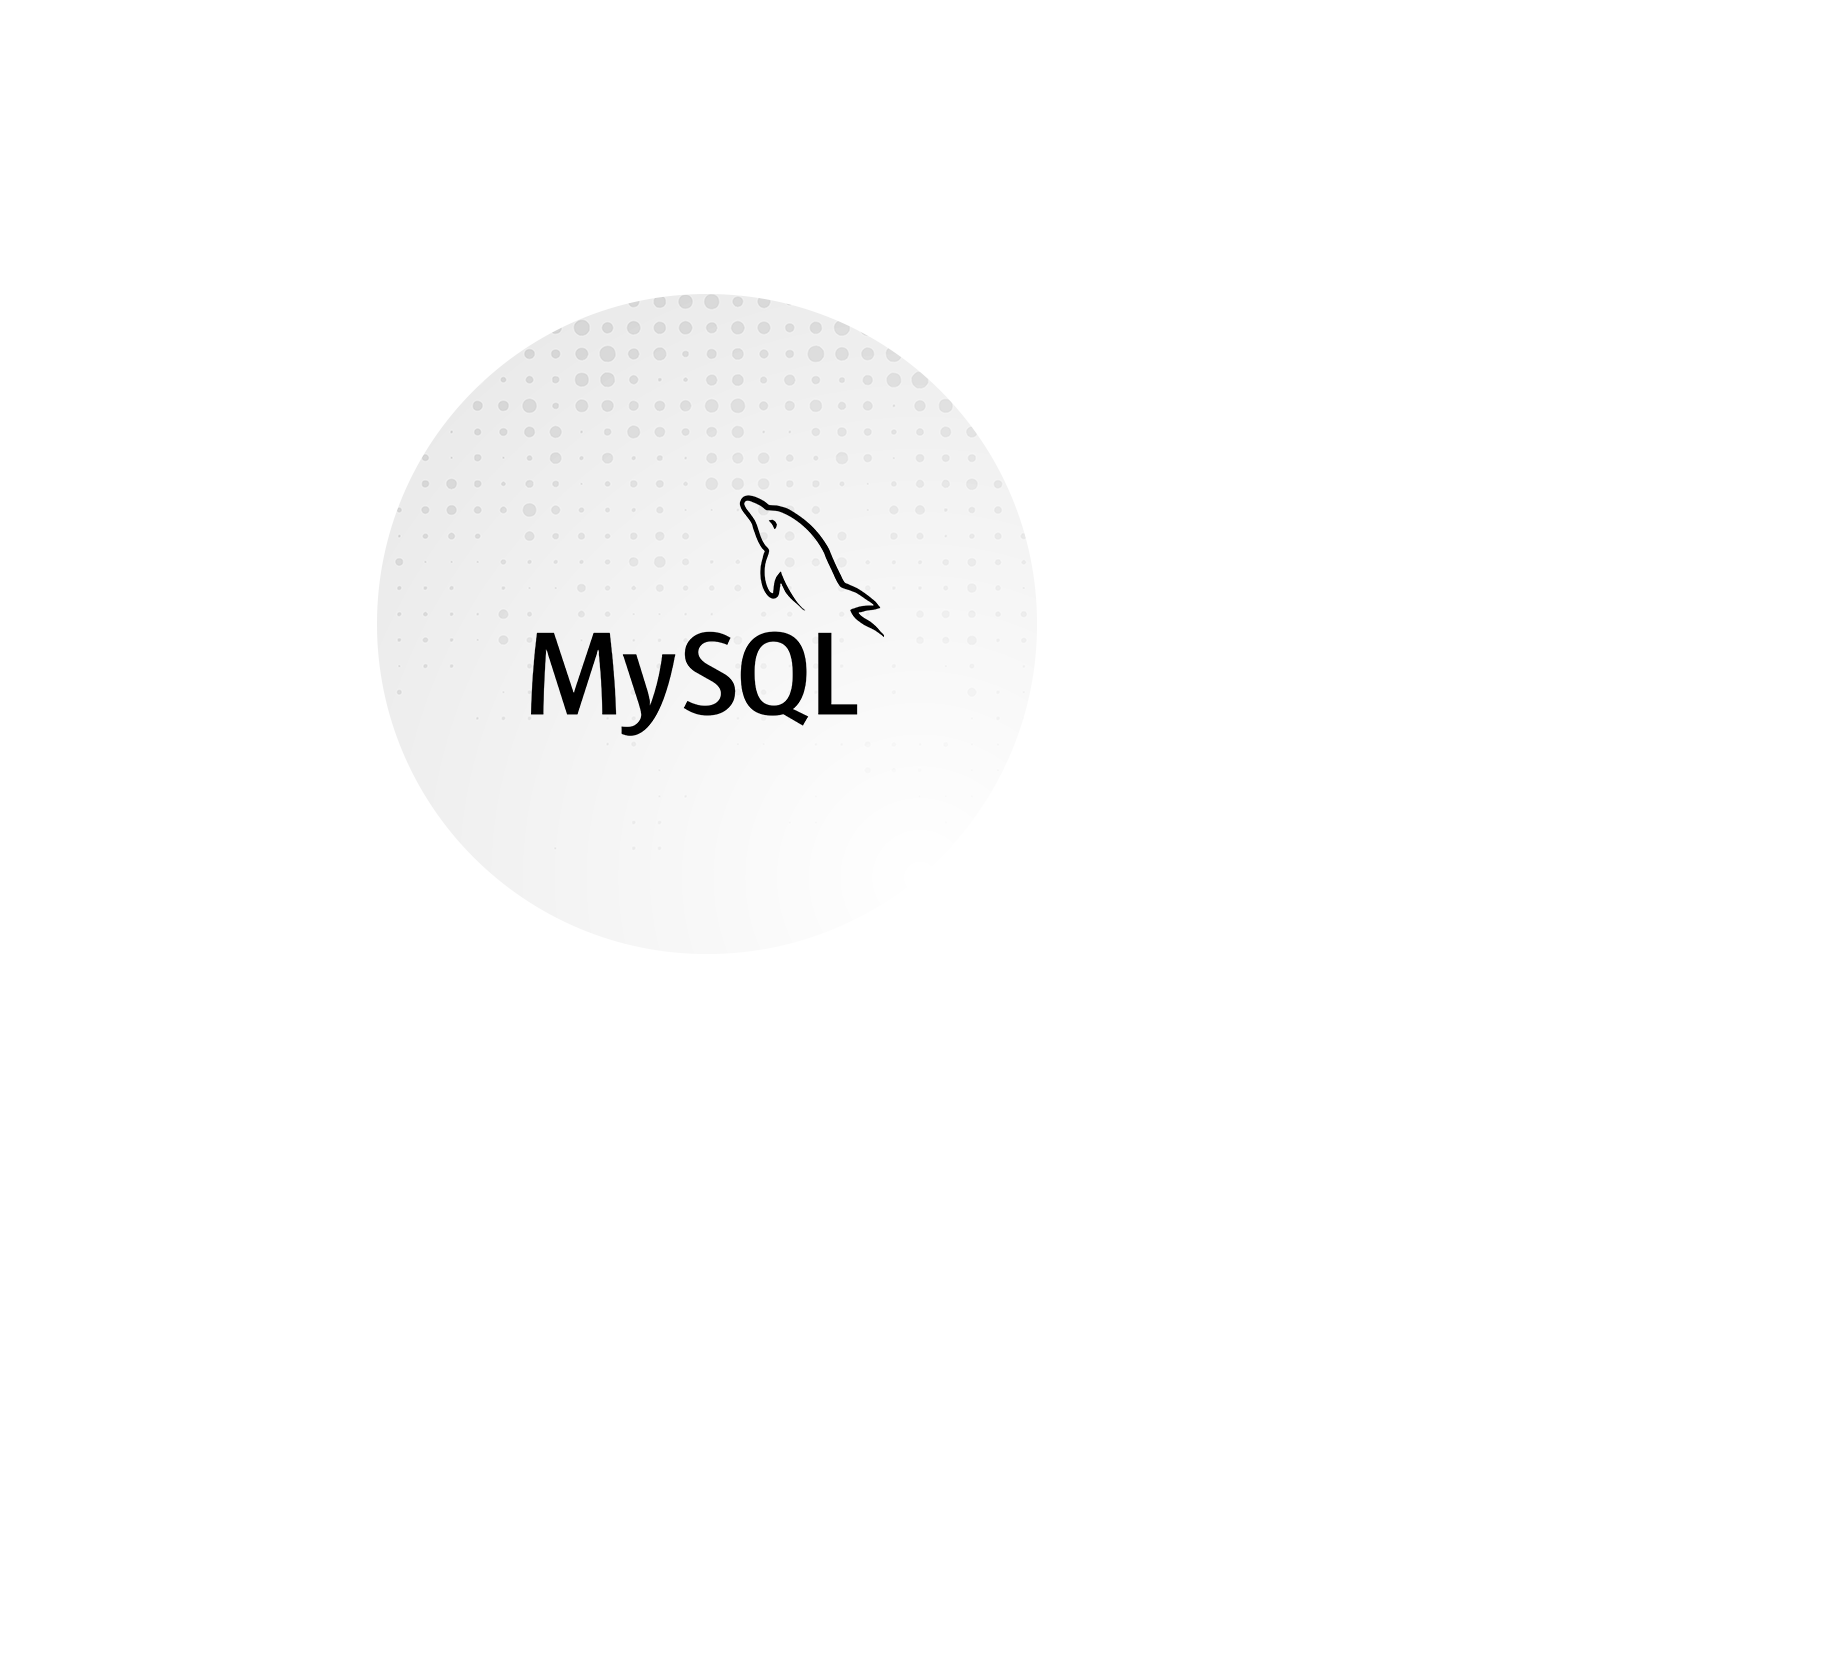 Mysql Icon